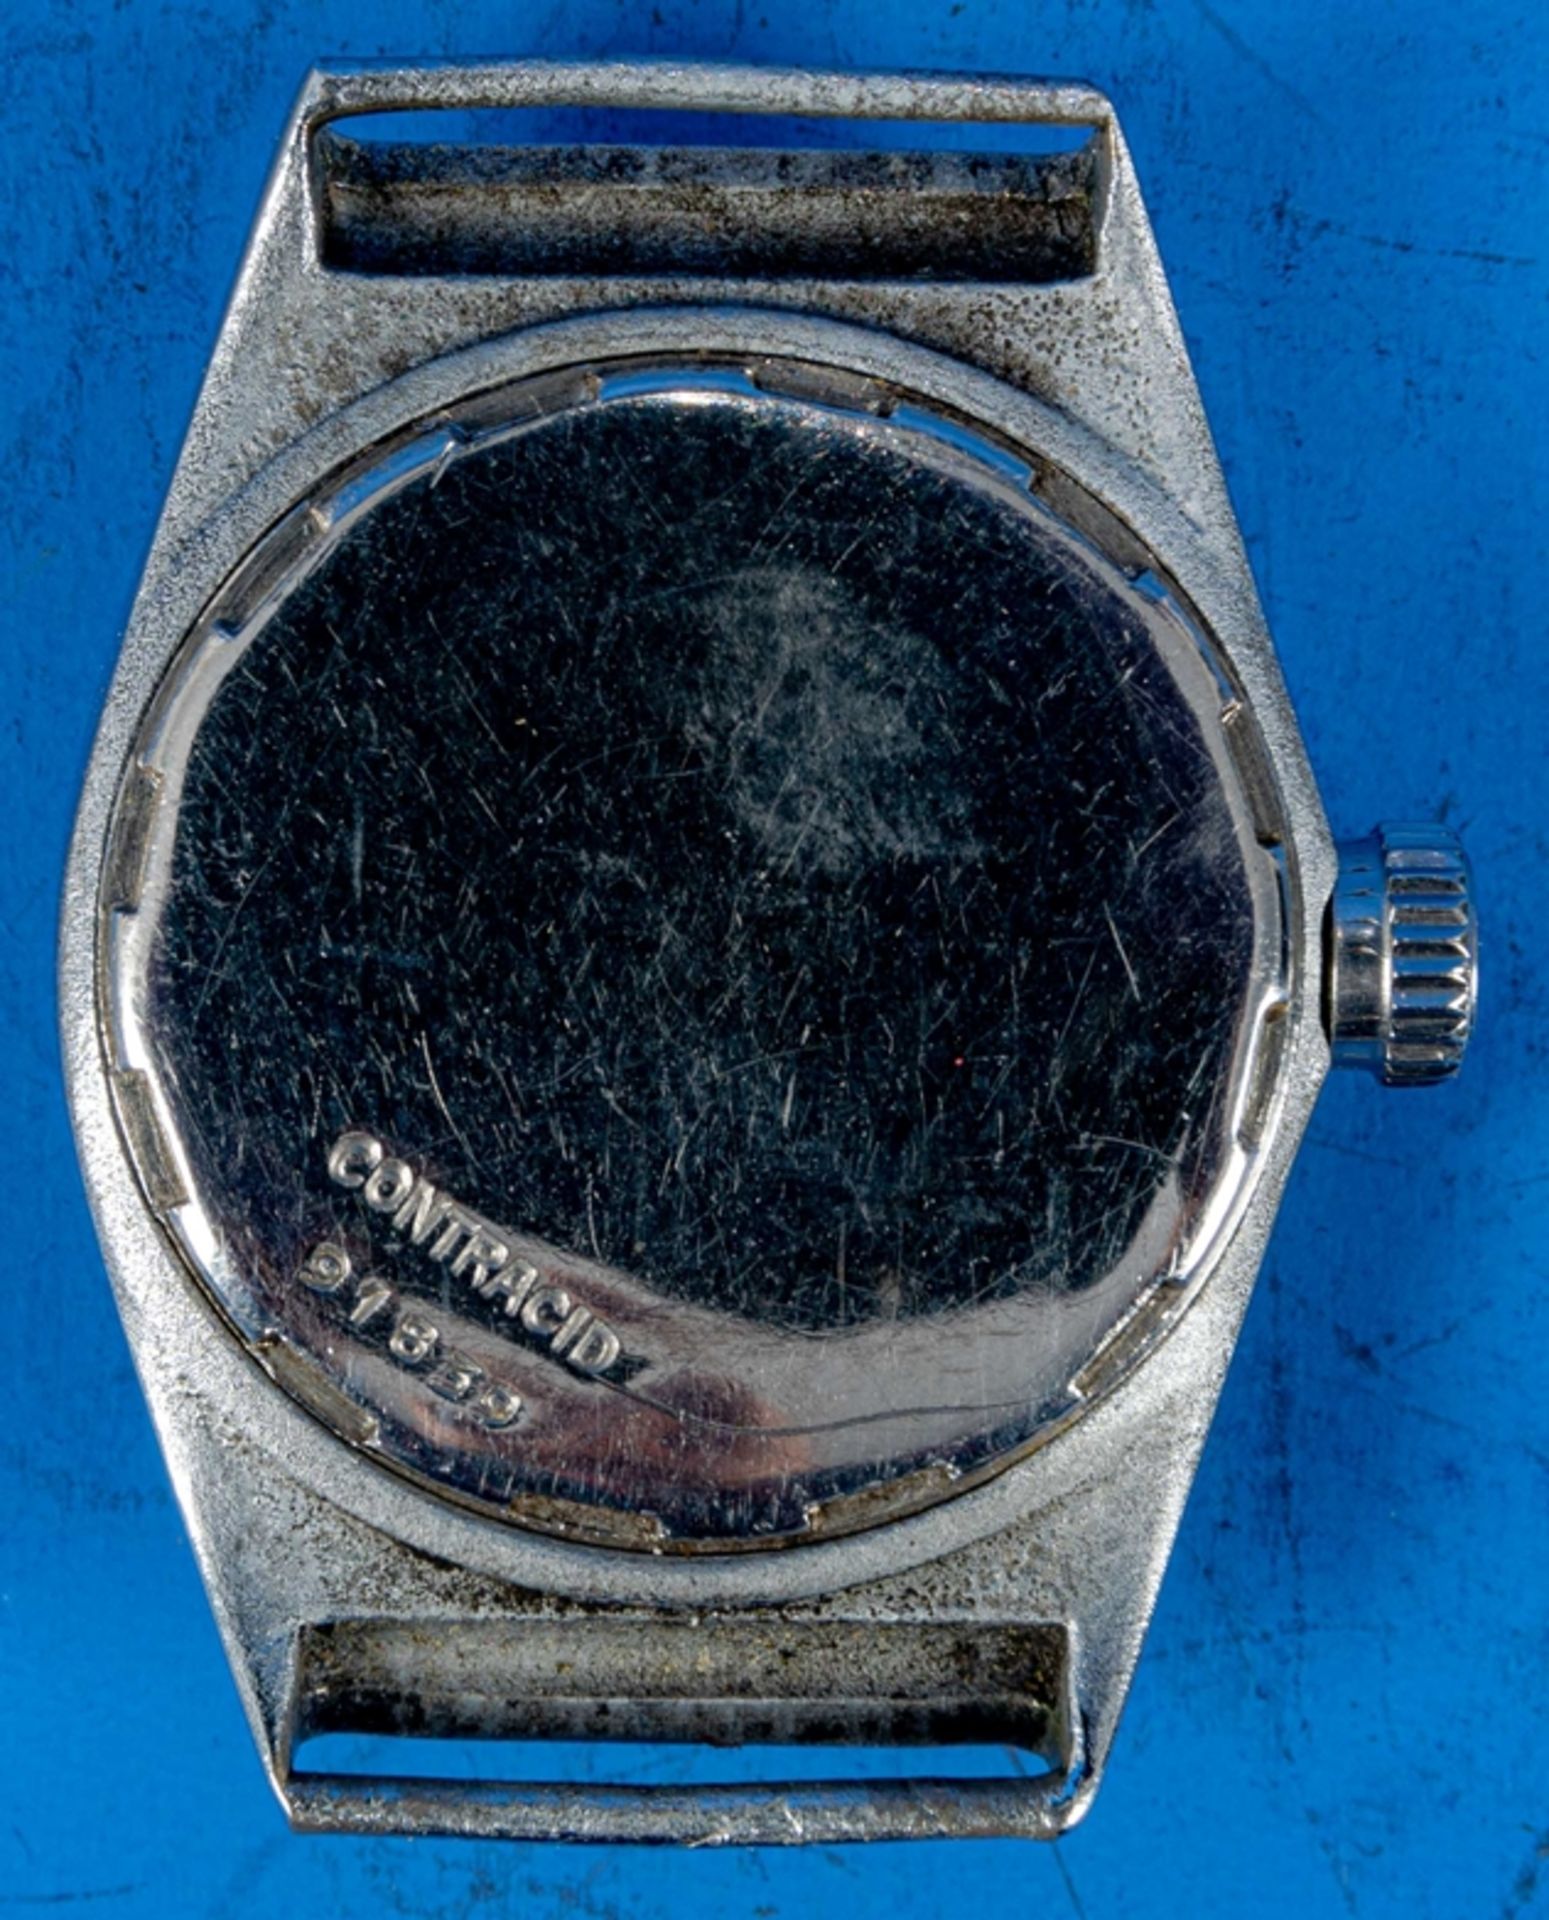 "REVUE SPORT" Unisex Armbanduhr, Stahlgehäuse, wohl 1930er Jahre, Gehäusedurchmesser ca. 28 mm, ara - Bild 5 aus 5